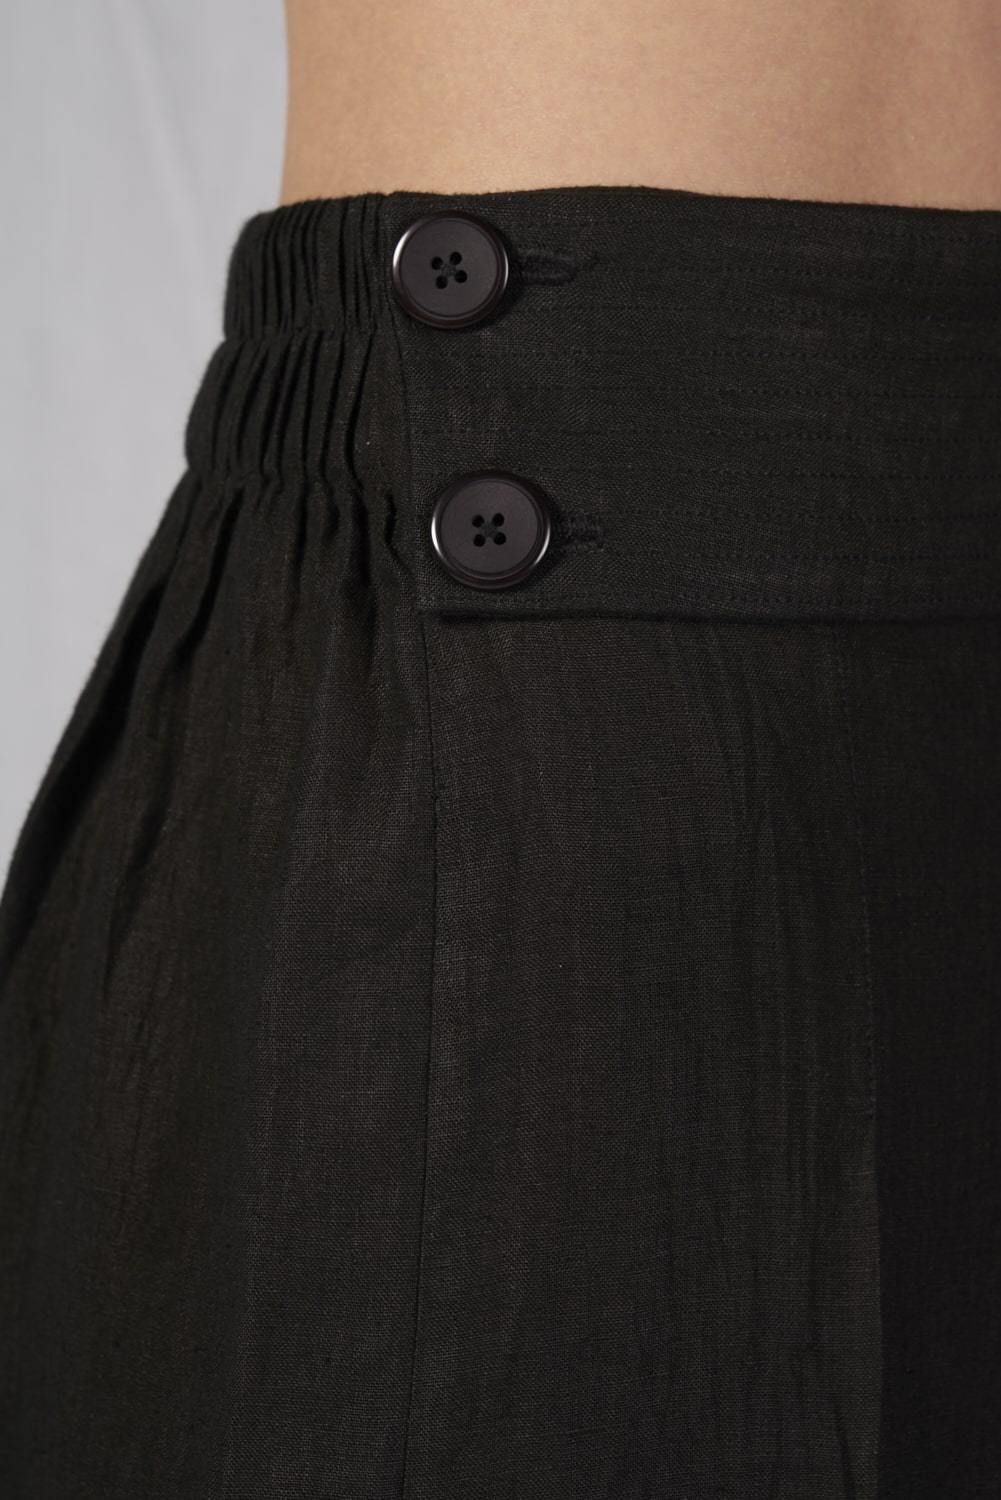 Guiada Skirt - Cora Bellotto - The Clothing LoungeCora Bellotto